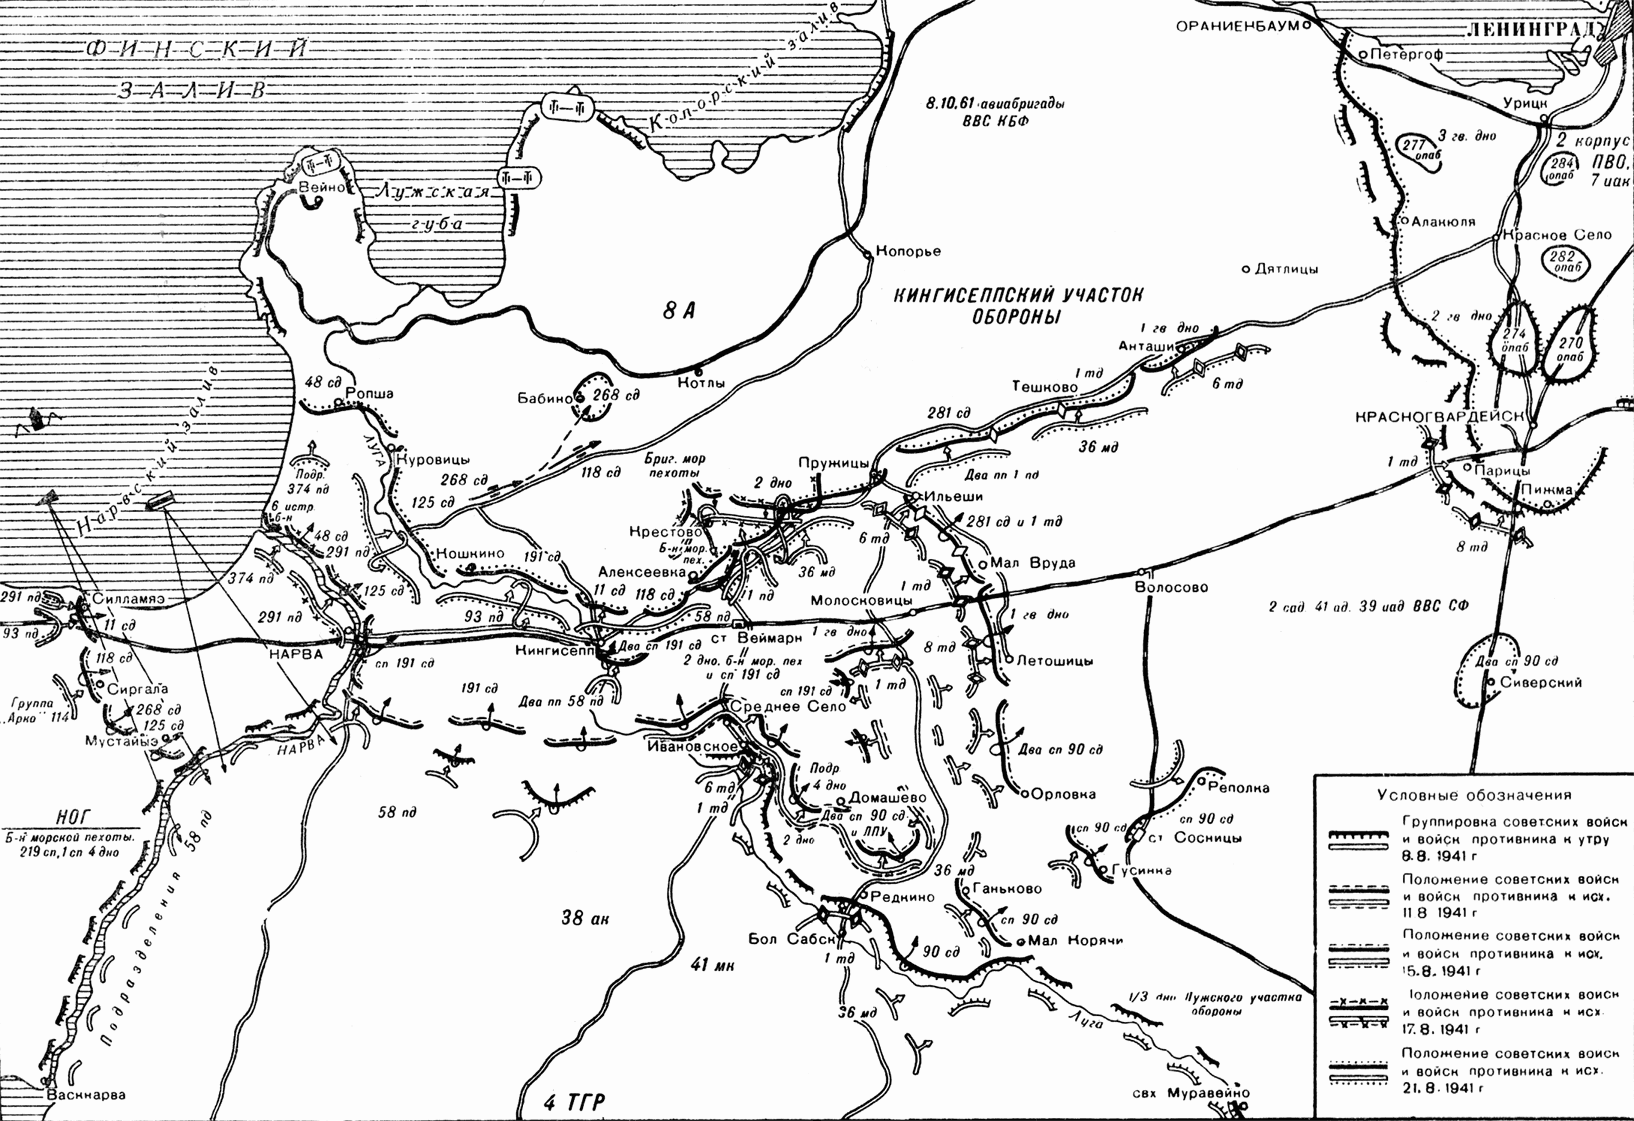 Лужский оборонительный рубеж 1941 карта. Кингисеппско-Лужская оборонительная операция. Лужский котел 1941 карты. Лужский рубеж на карте июль-август 1941. Оборонительное сражение в районе города луги